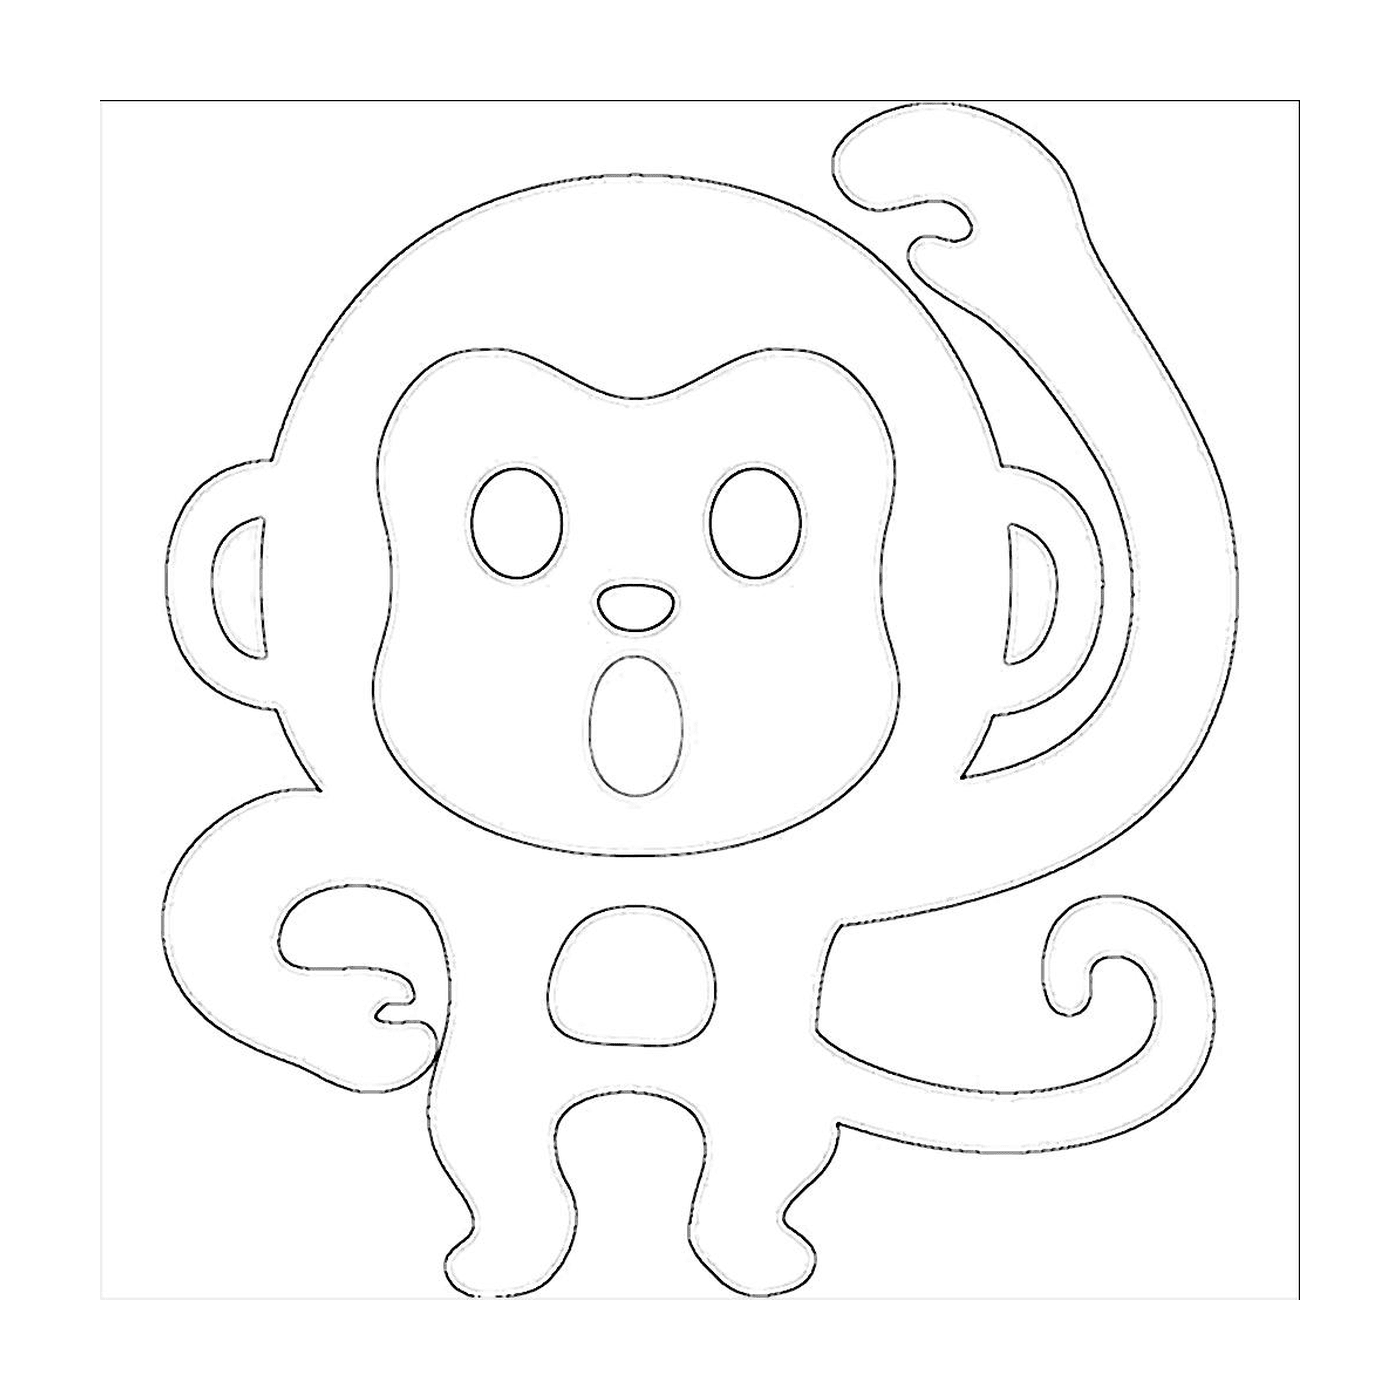  Um macaco desenho 